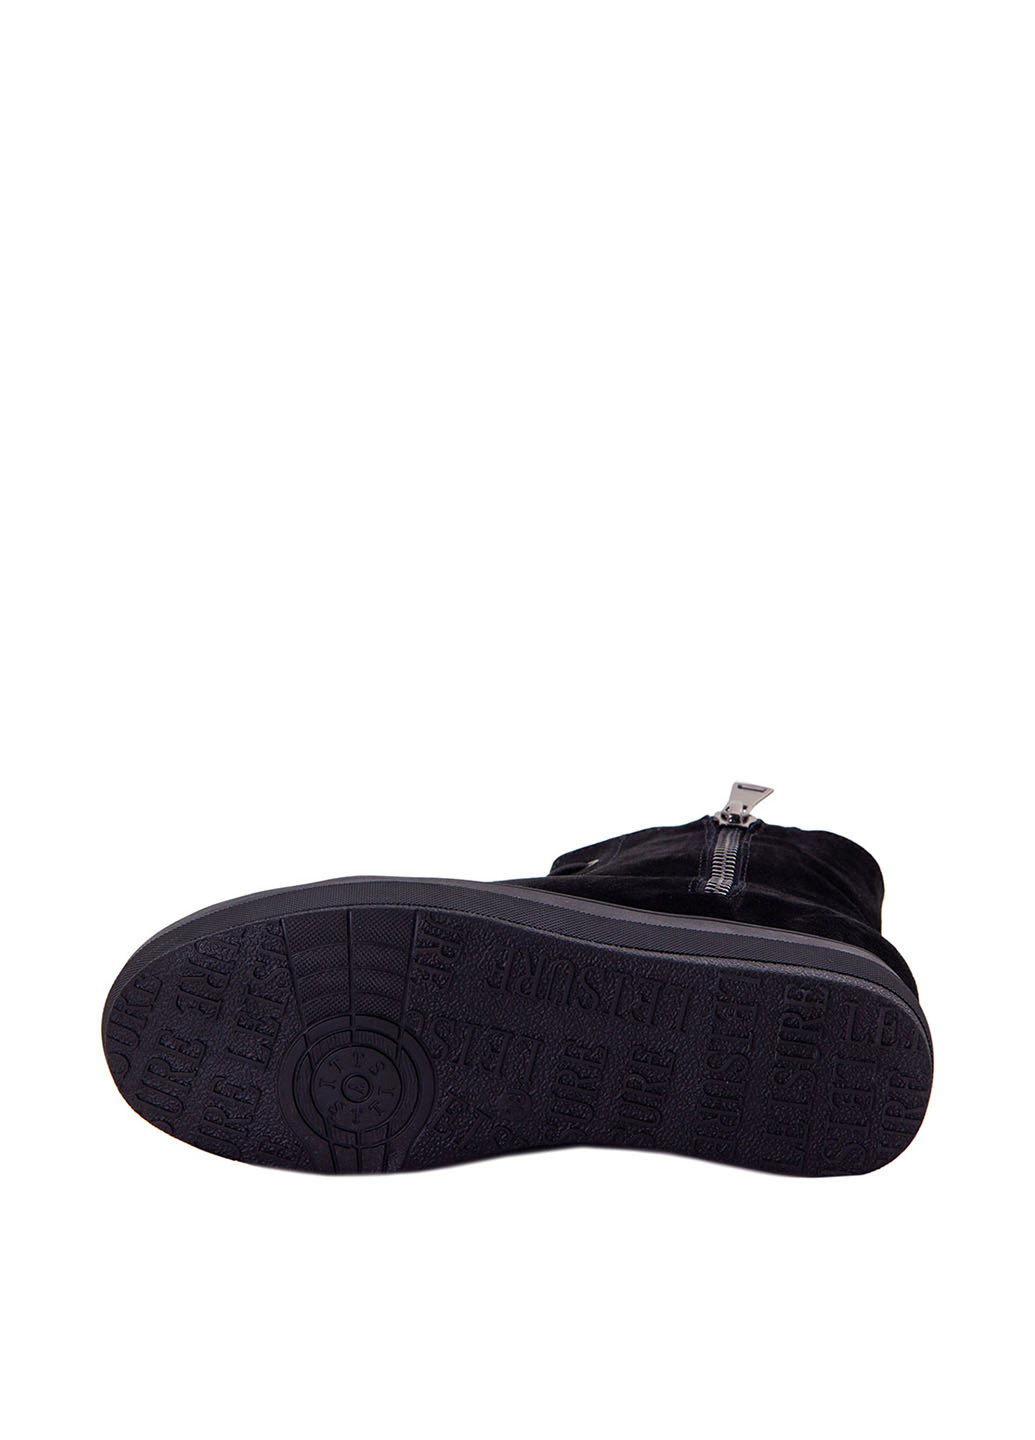 Зимние ботинки Optima со шнуровкой, с молнией из натуральной замши